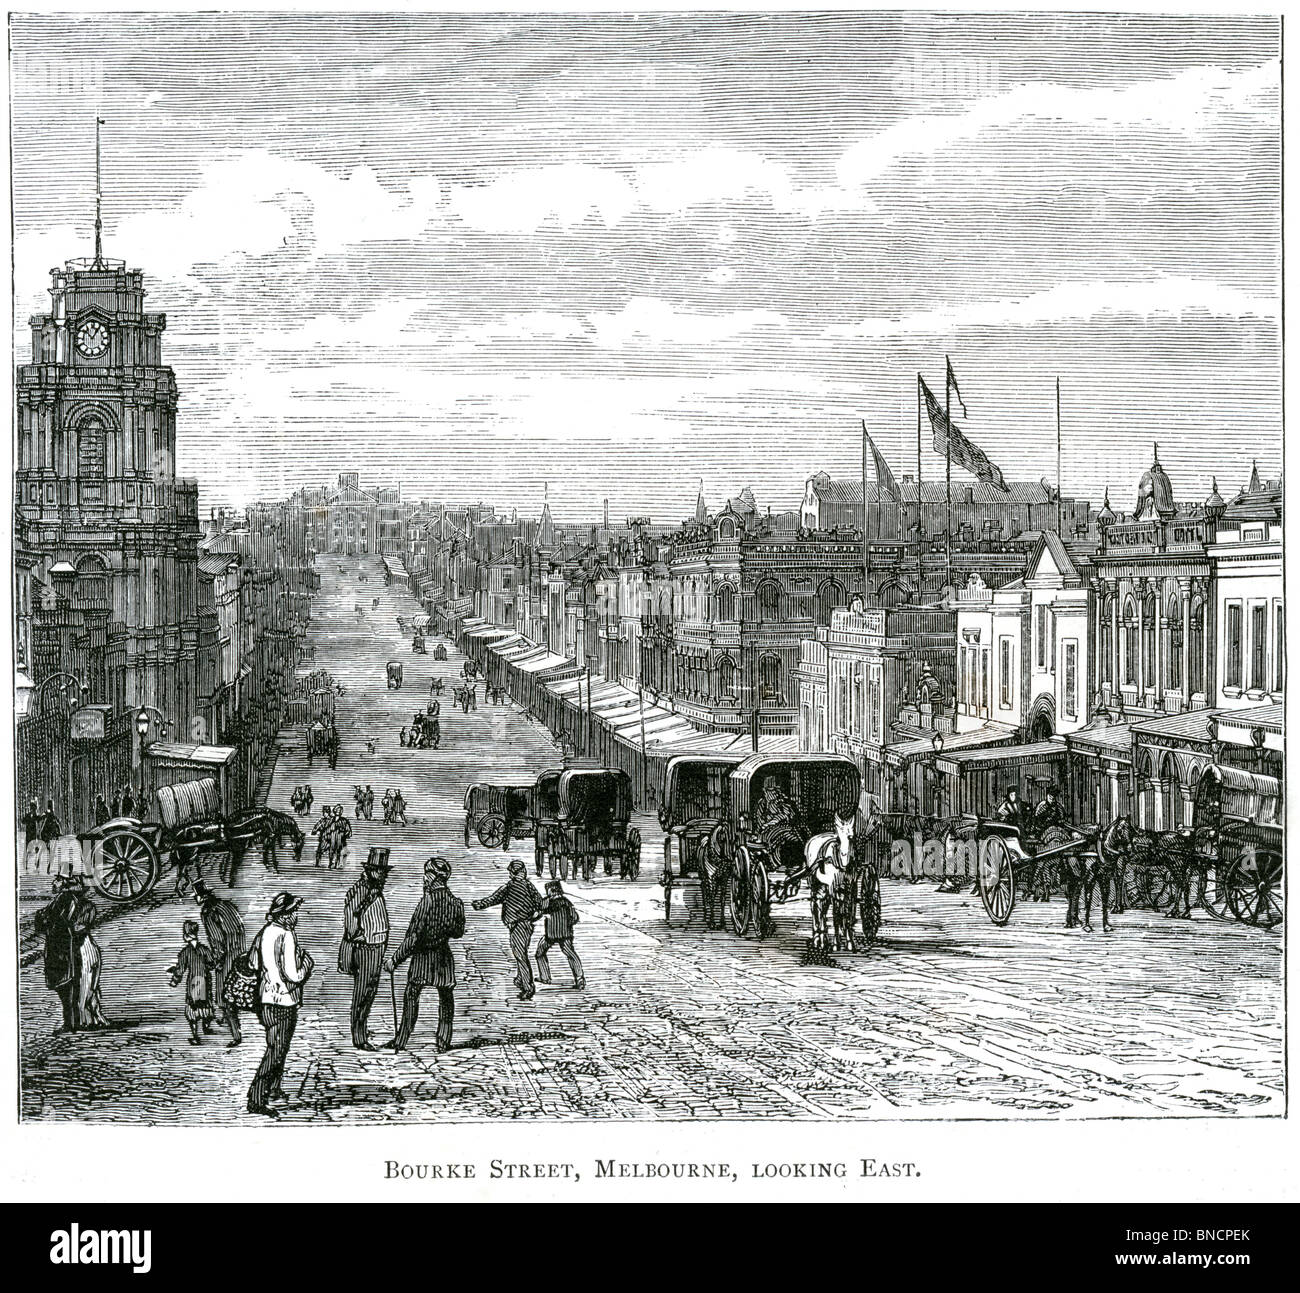 Un grabado de Bourke Street, Melbourne, Victoria, Australia - publicado en un libro impreso en 1886. Foto de stock